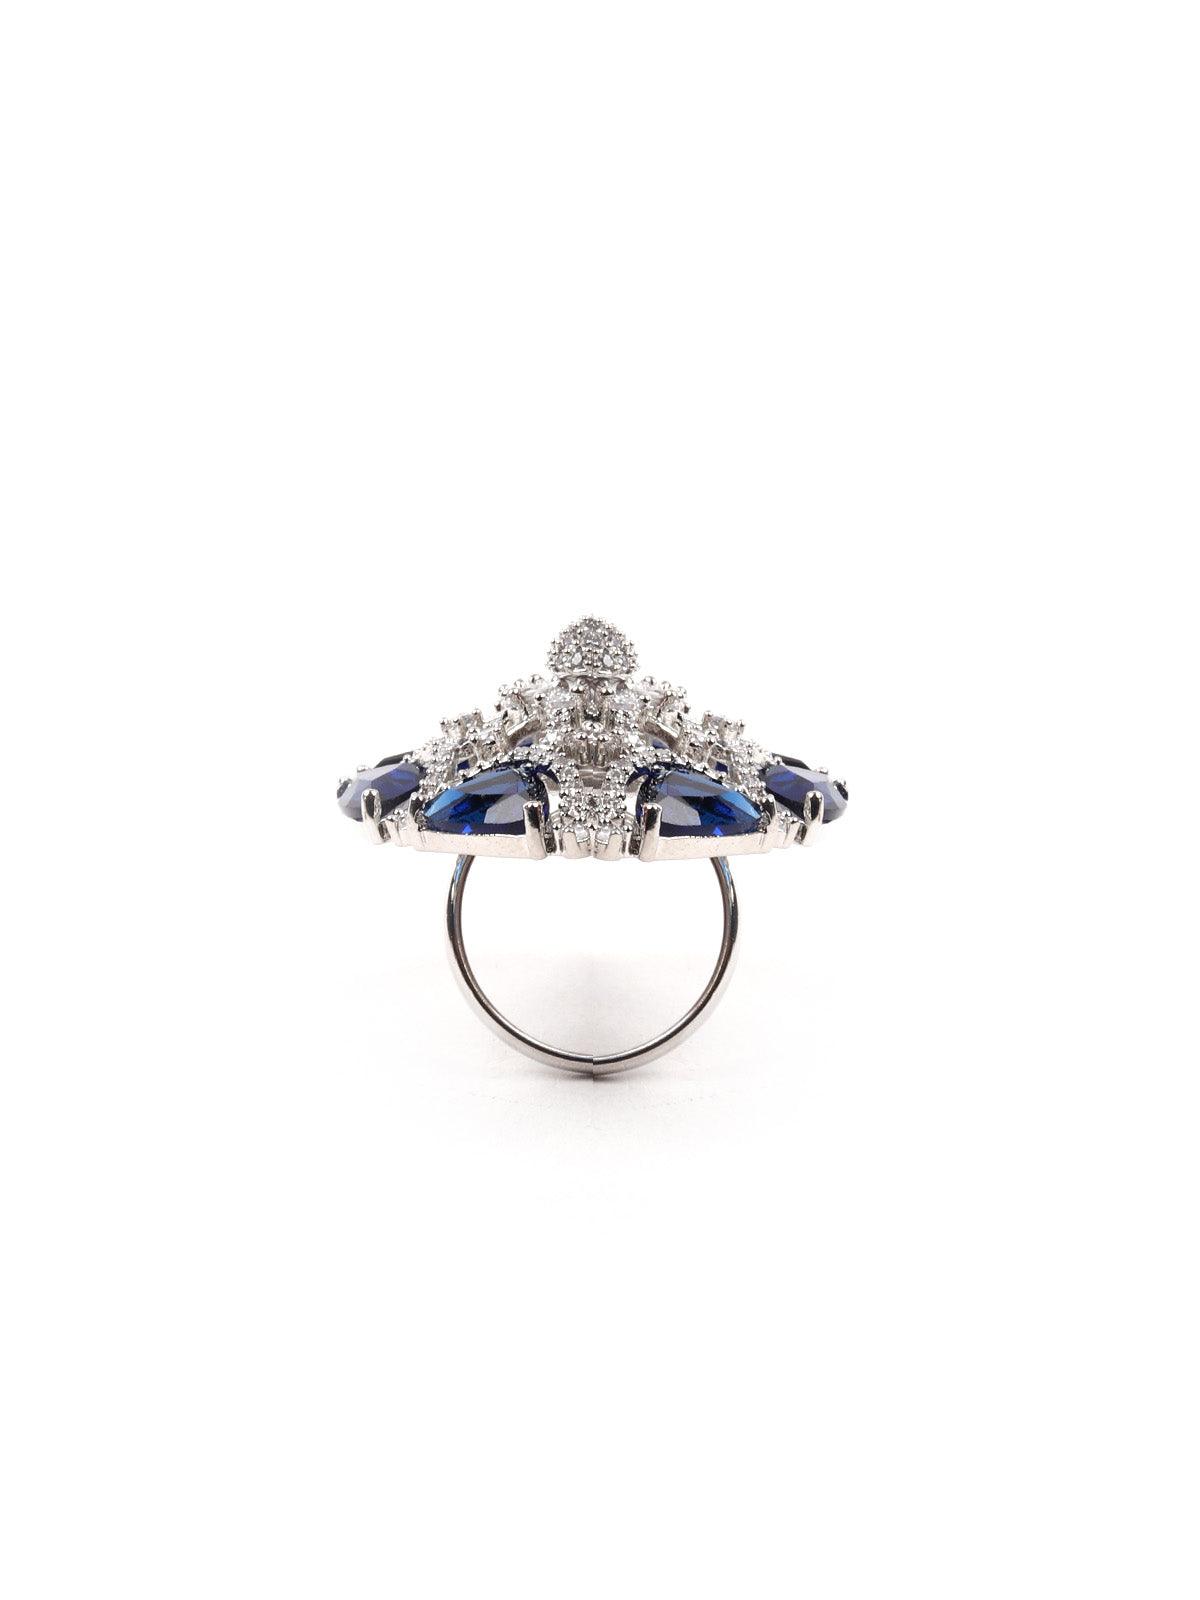 BLUE DIAMONDS EMBELLISHED RING - Odette